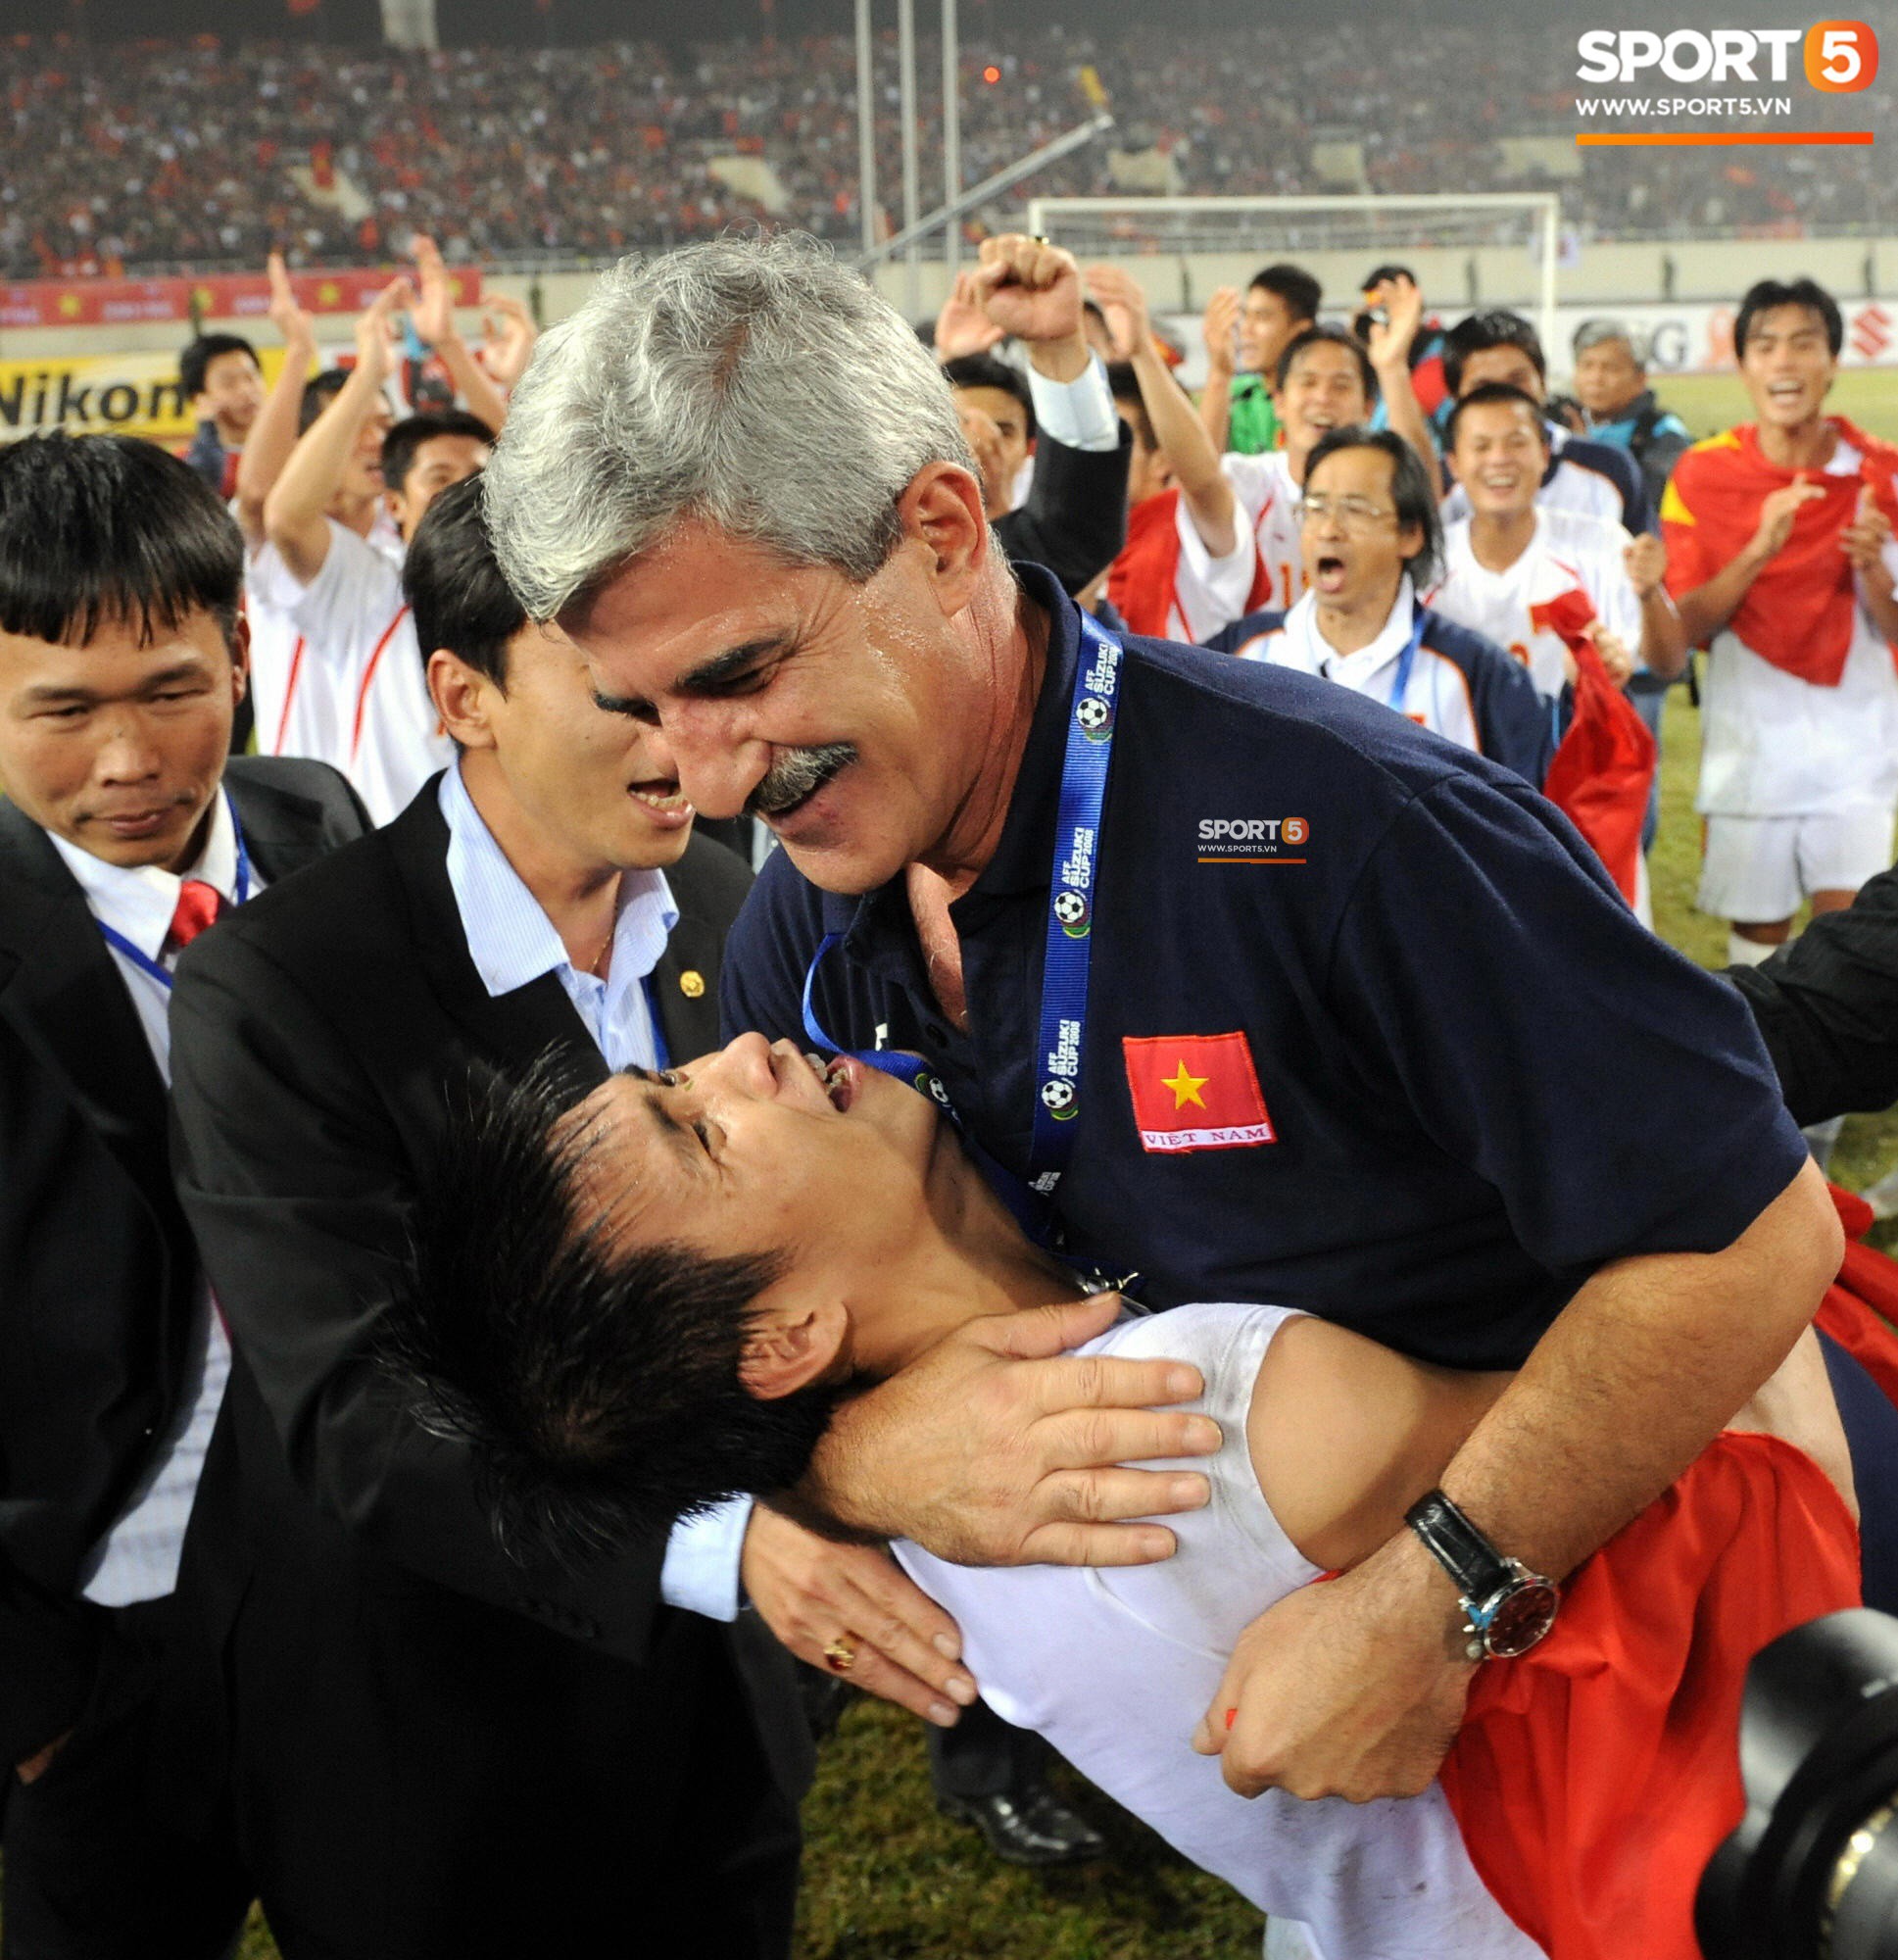 Nhìn lại những khoảnh khắc kỳ diệu trong ngày Việt Nam giành ngôi vương tại AFF Cup 2008-12